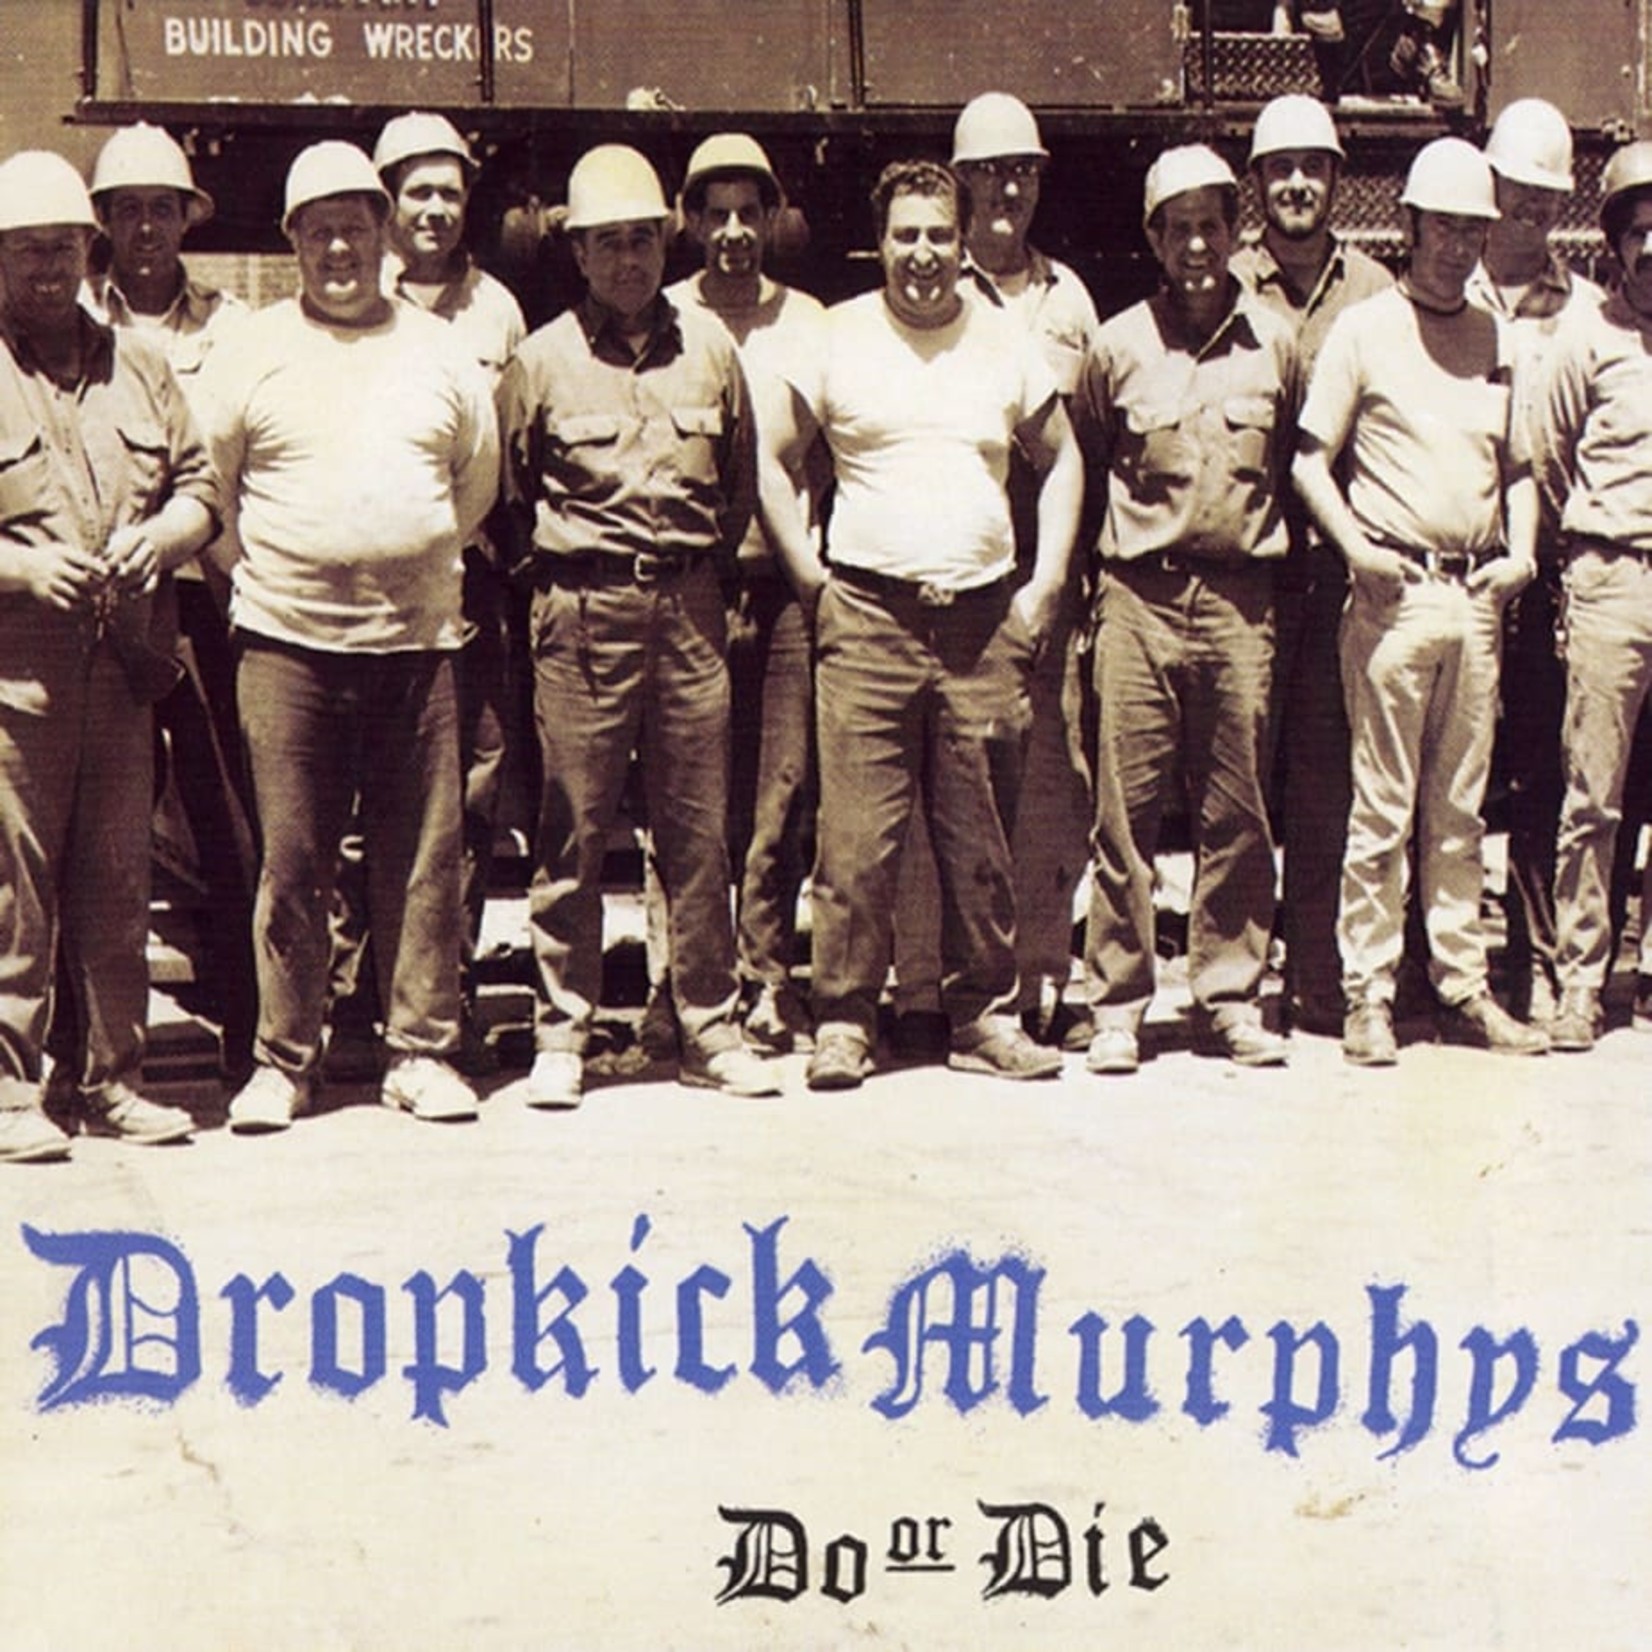 [New] Dropkick Murphys - Do or Die